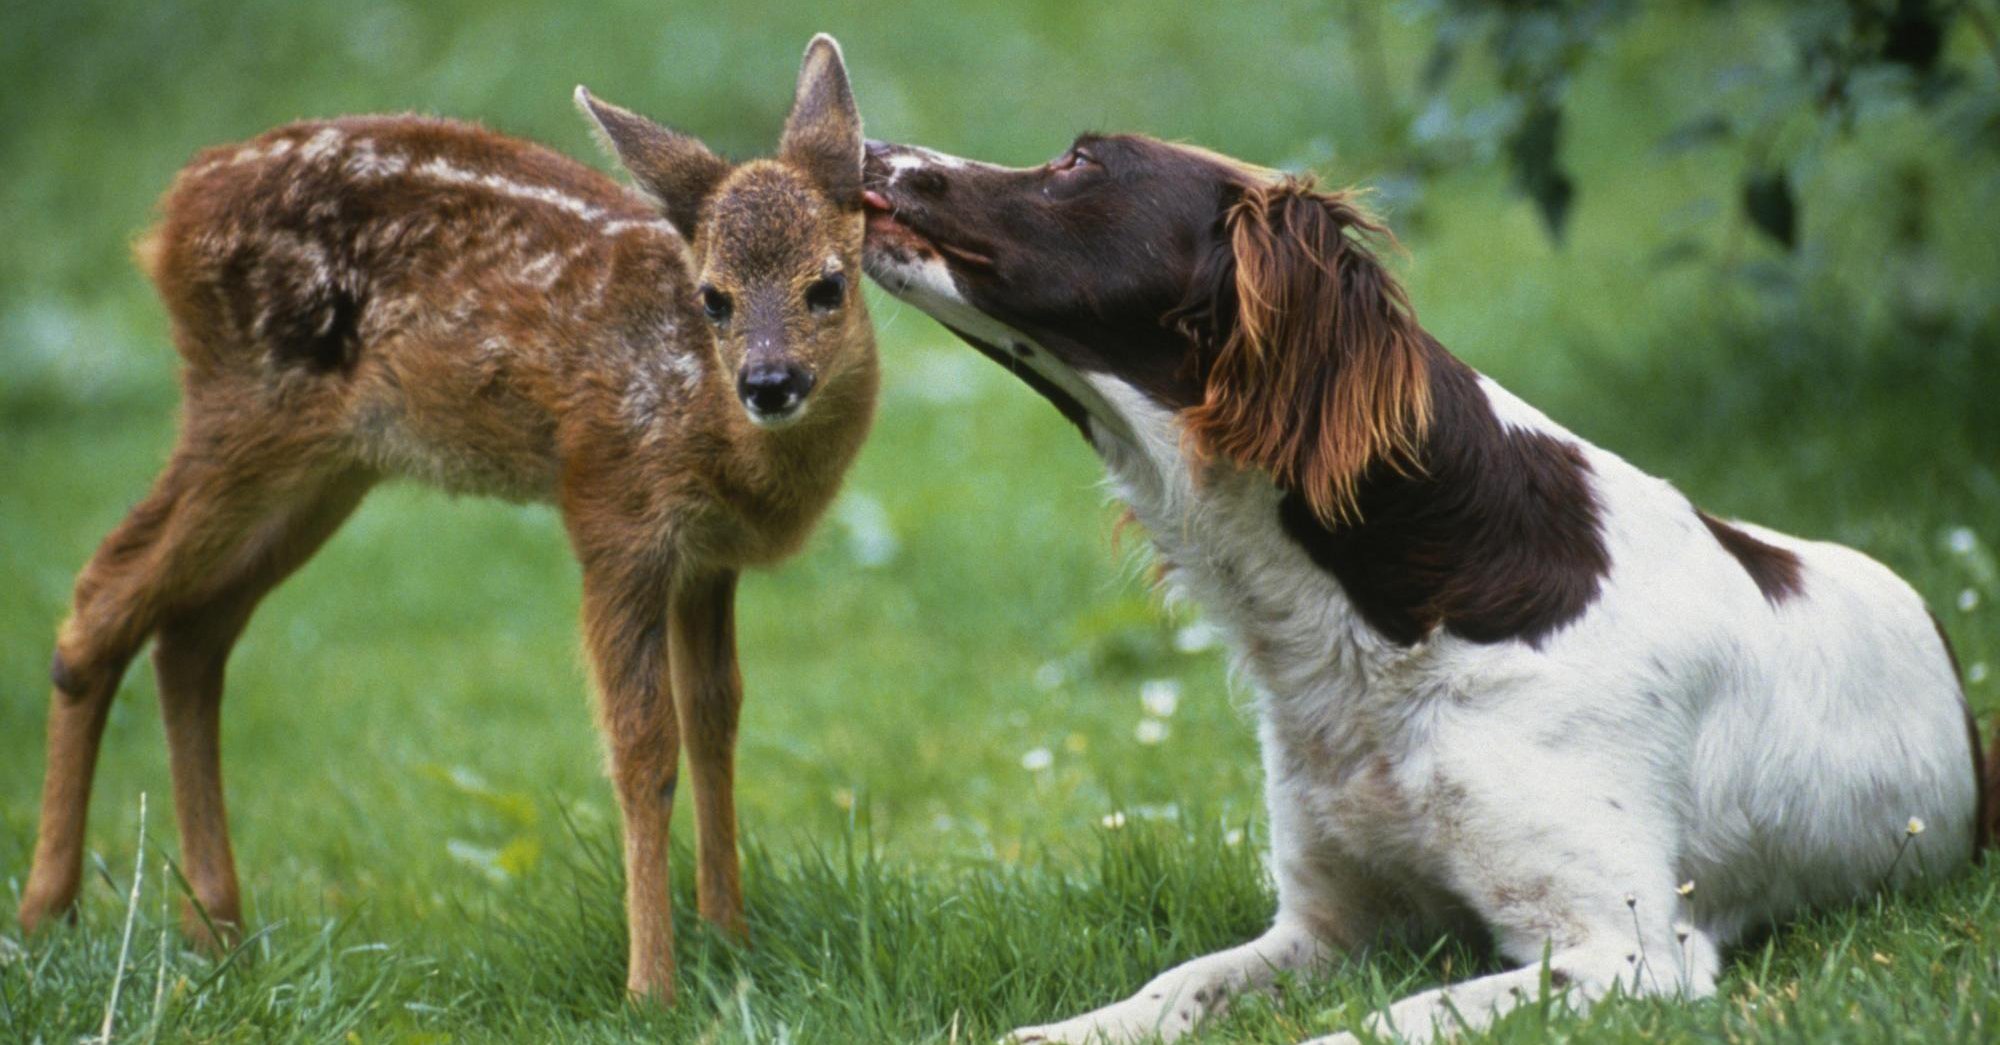 Bármilyen aranyosak is együtt, ne engedjük oda kutyánkat a kis állathoz, és mi se nyúljunk hozzá!